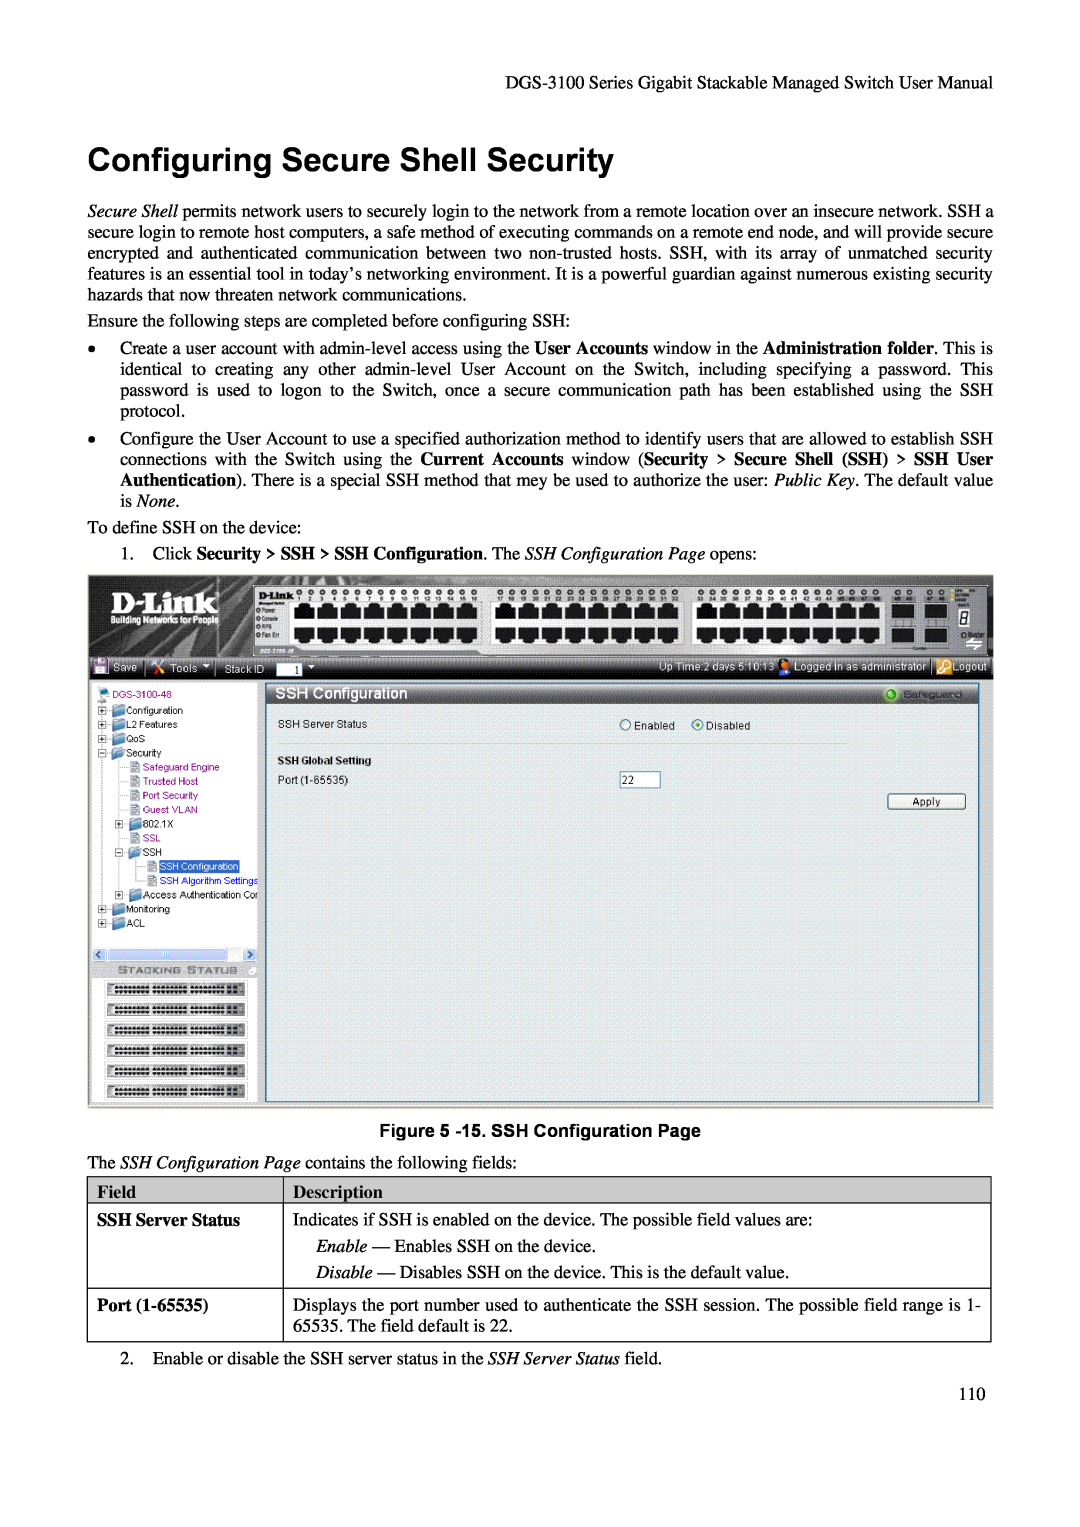 D-Link DGS-3100 Configuring Secure Shell Security, 15. SSH Configuration Page, Field SSH Server Status Port, Description 